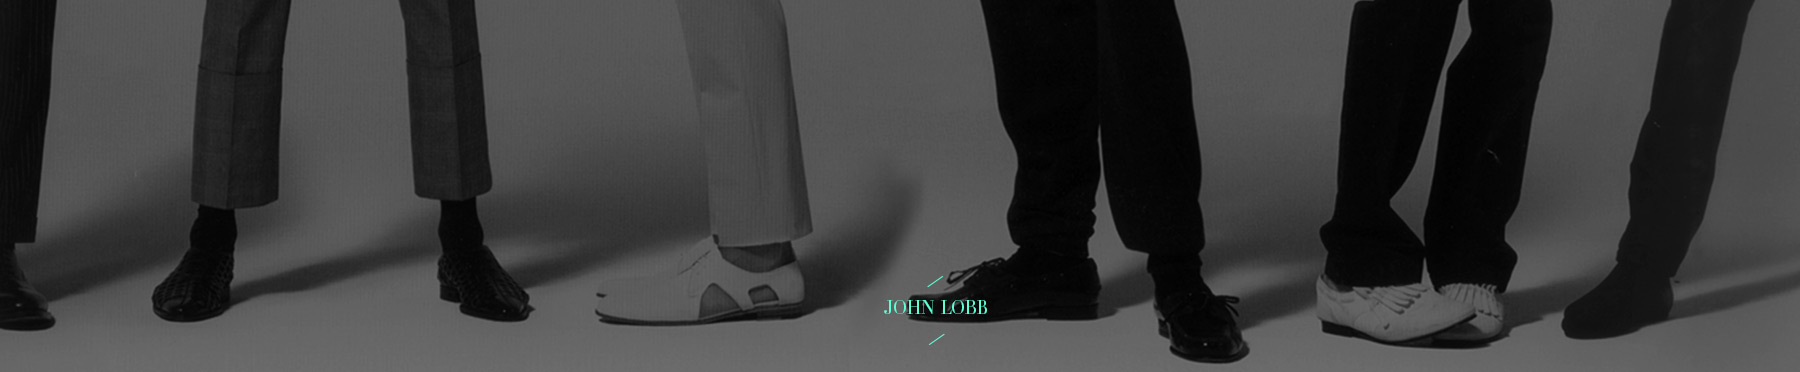 Refonte du site John Lobb, une marque de chaussures et souliers haut-de-gamme pour homme